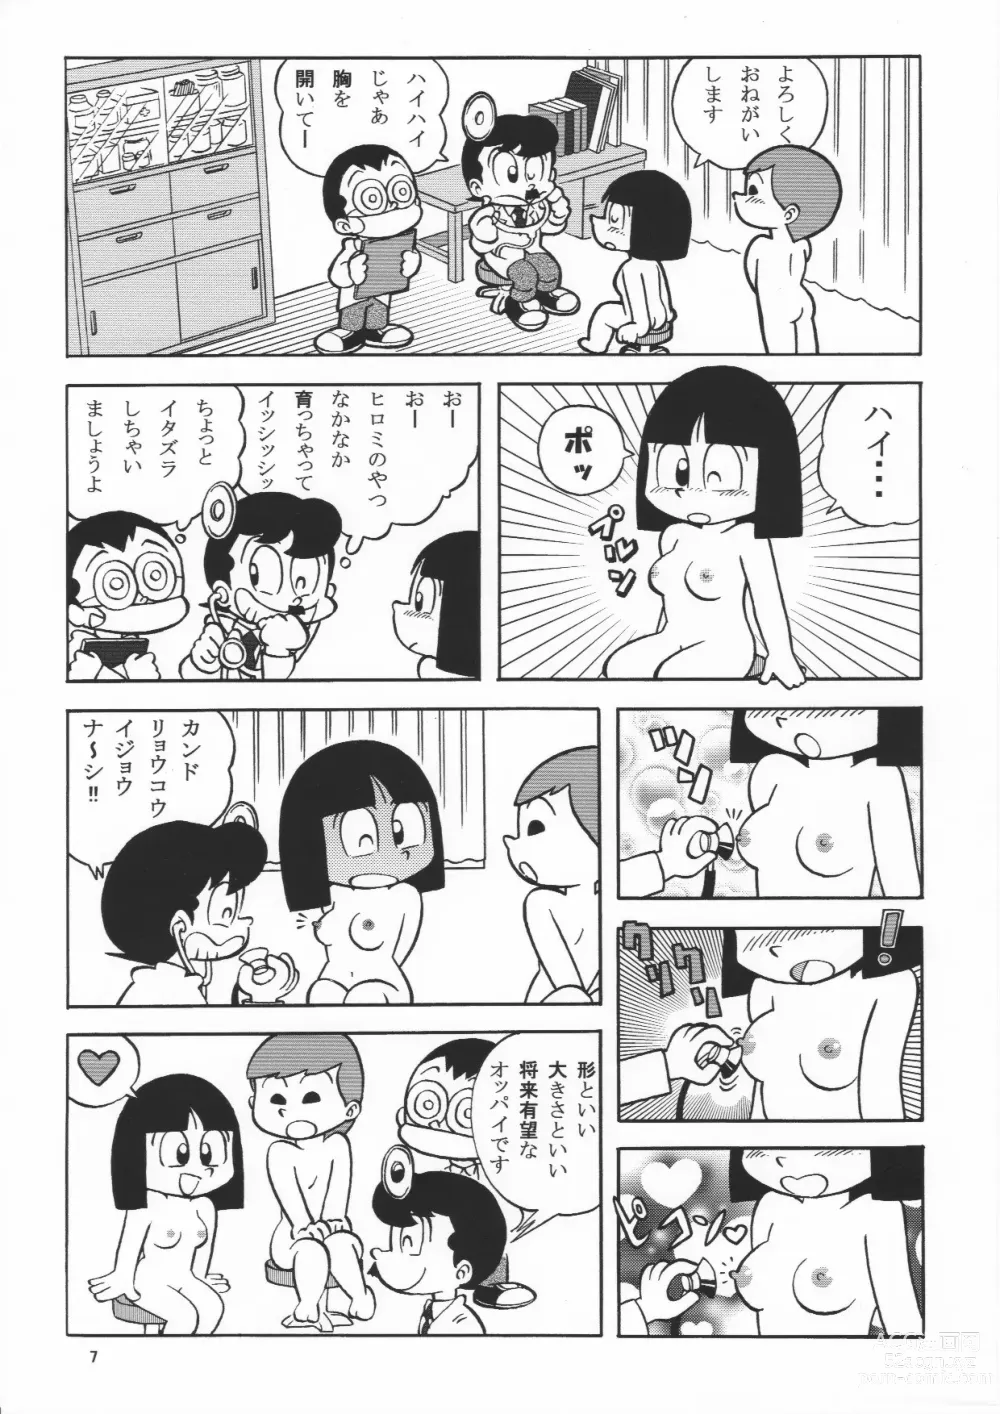 Page 7 of doujinshi (Maicching Machiko Sensei)